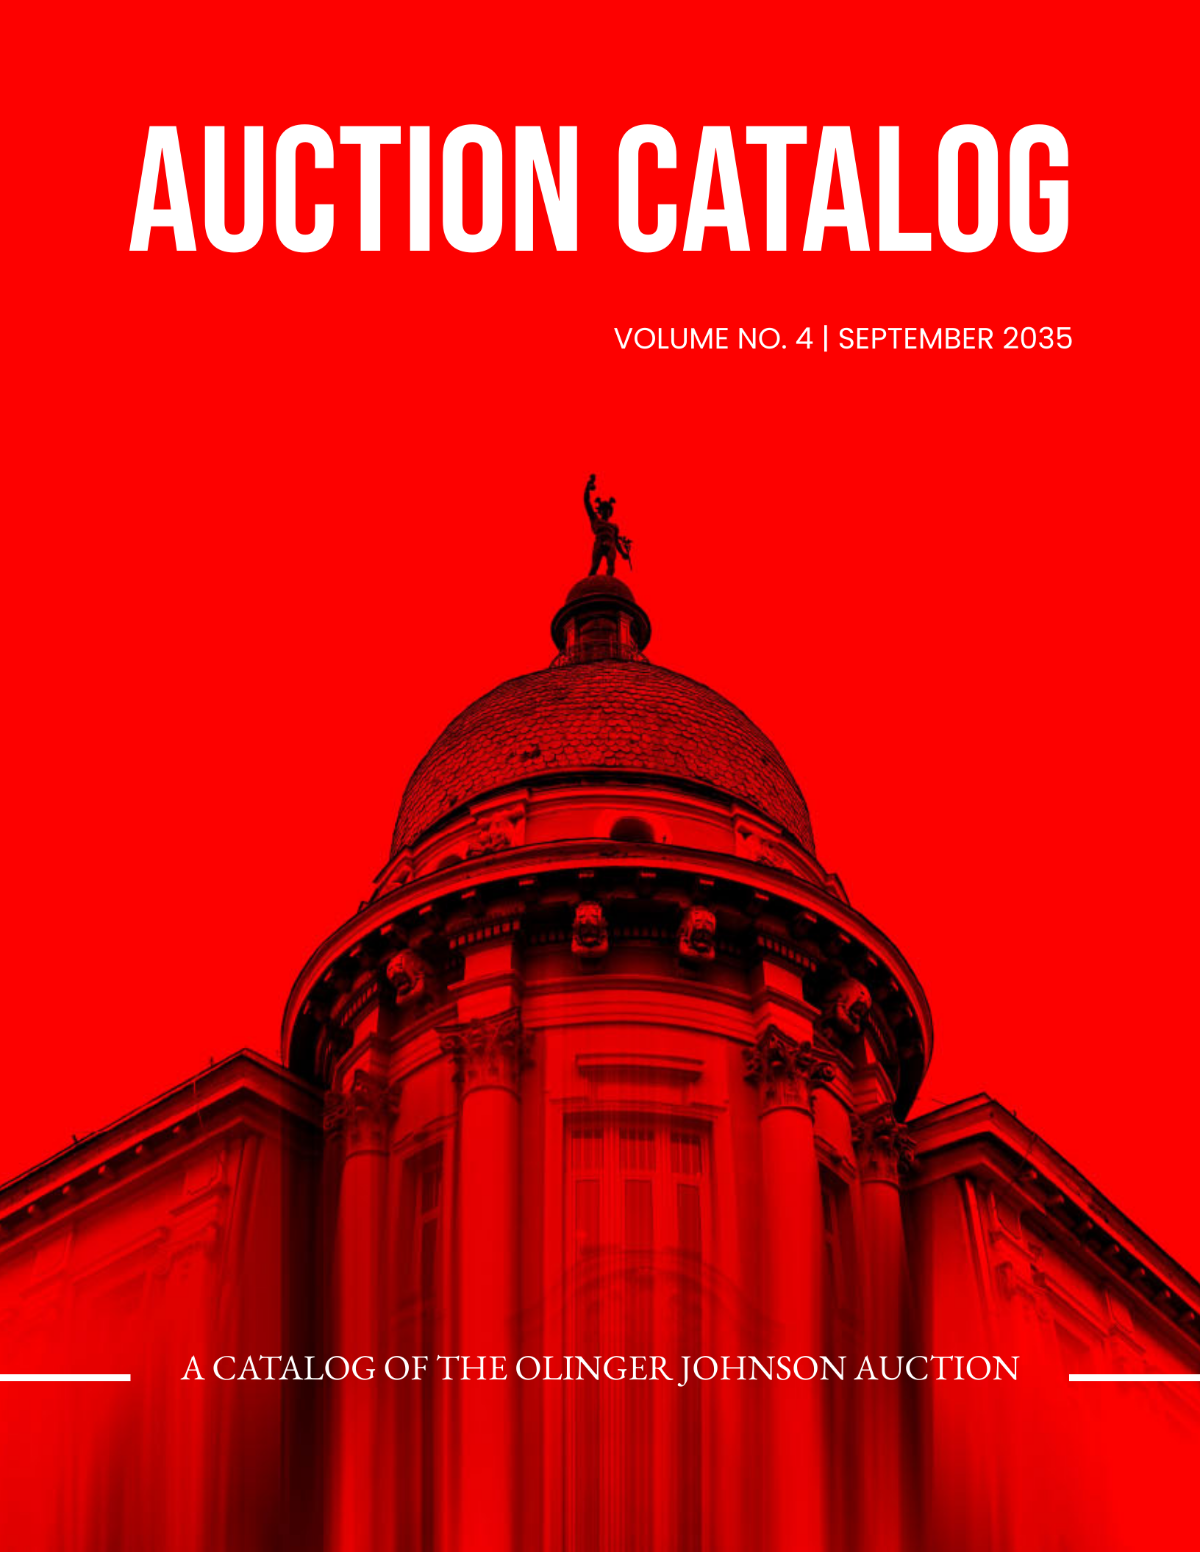 Simple Auction Catalog